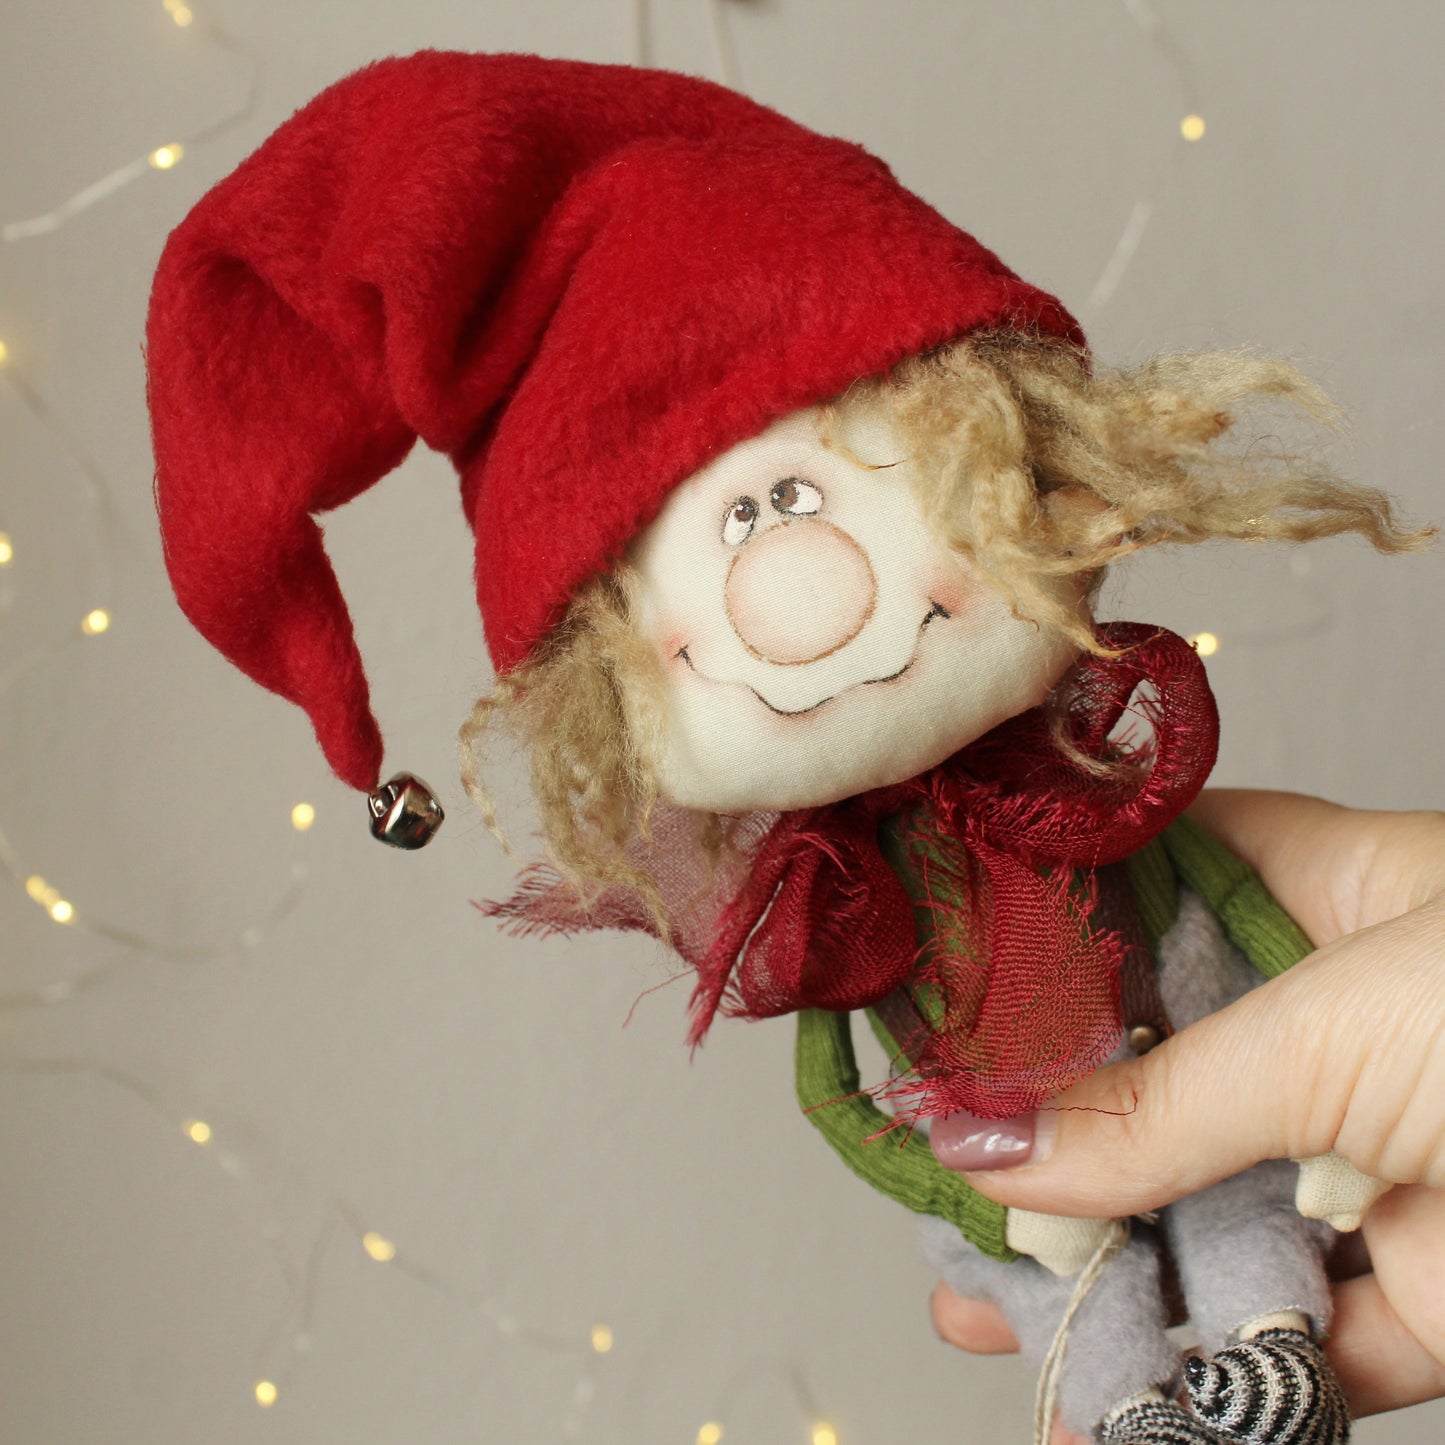 Funny handmade gnome